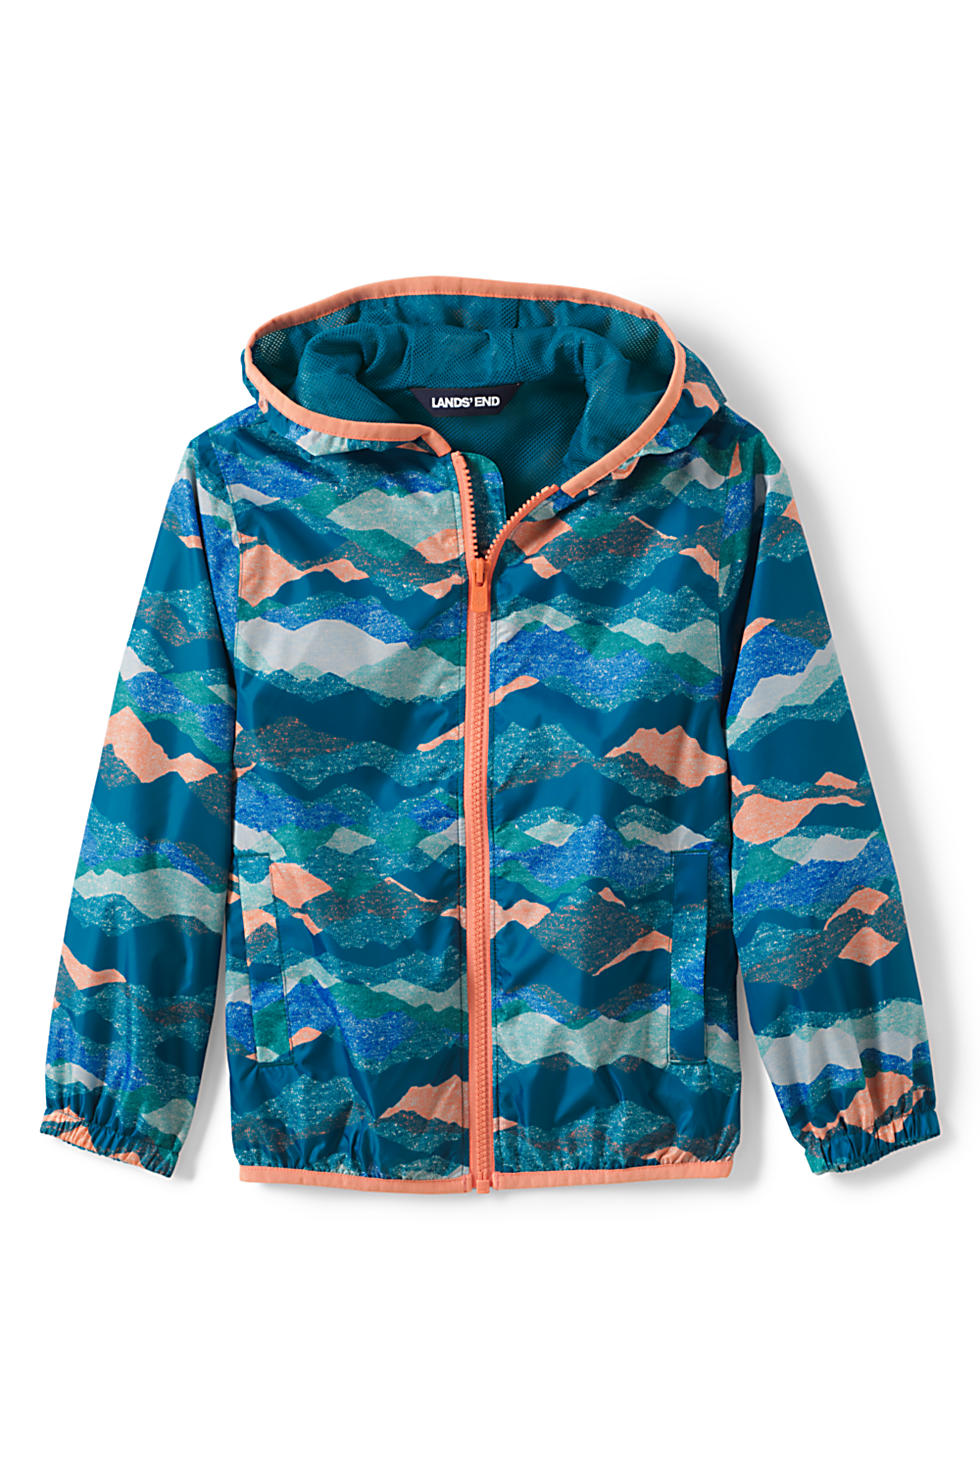 Lands End Kids Waterproof Rain Jacket (XL & XXL size in 2 colors)